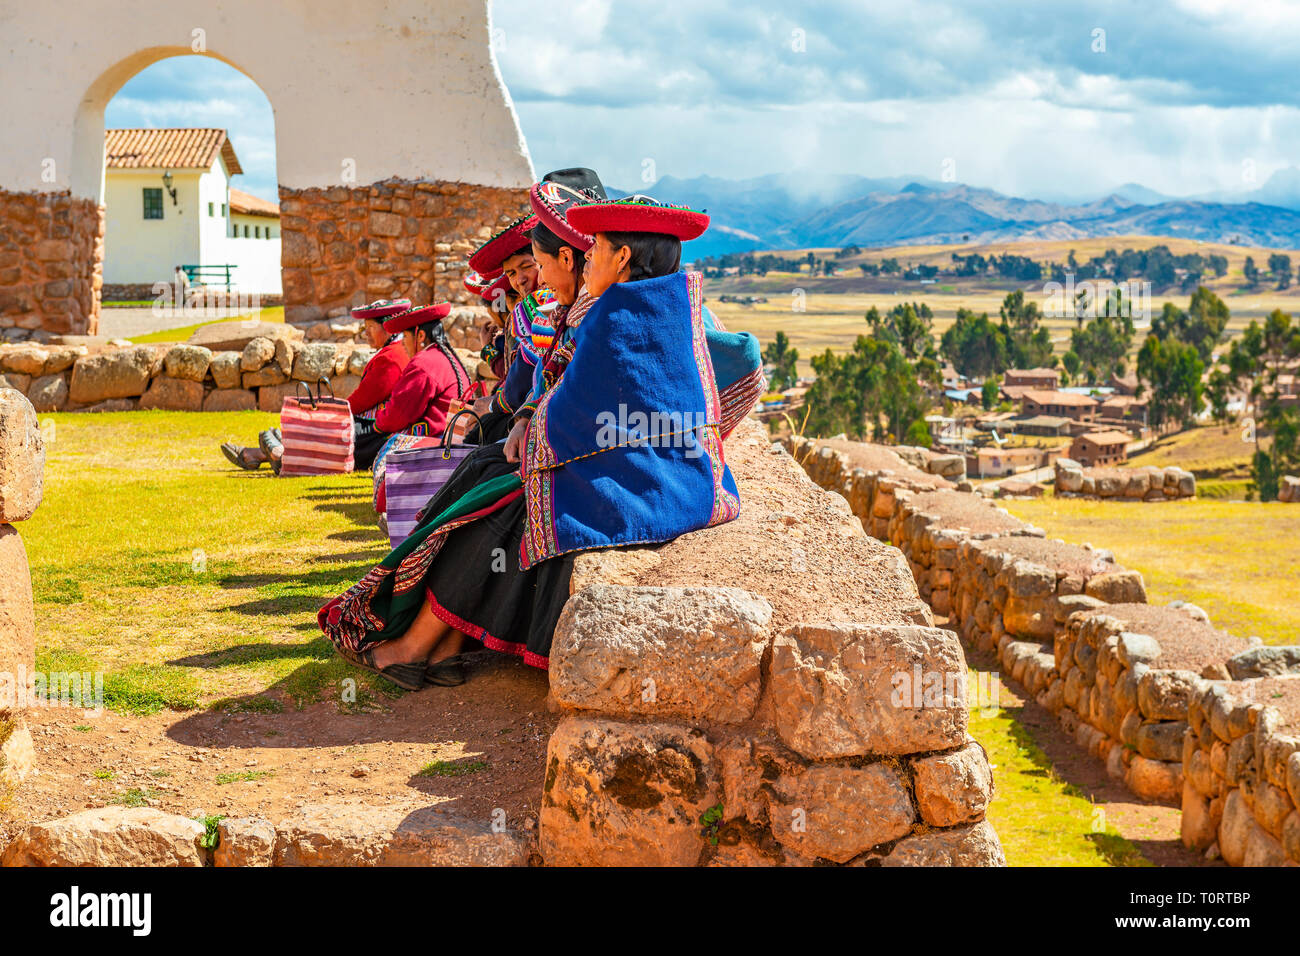 Un groupe de femmes autochtones Quechua péruvien assis sur un ancien mur Inca dans la ruine Inca archéologique de Chinchero, province de Cusco, Pérou. Banque D'Images